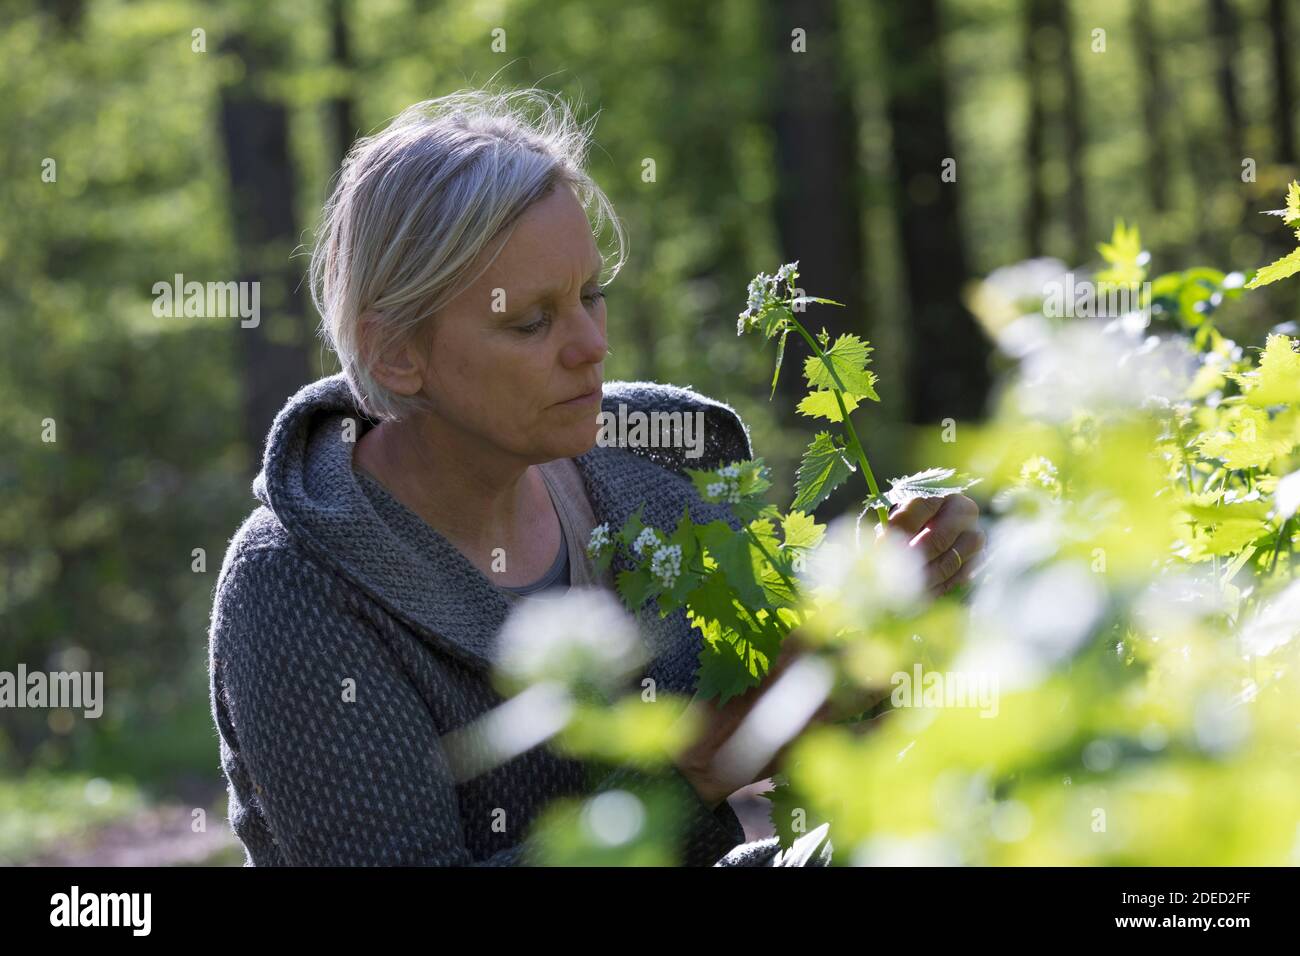 Senape all'aglio, aglio all'orlo, Jack-by-the-Hedge (Alliaria petiolata), donna che raccoglie la senape all'aglio in una foresta, Germania Foto Stock